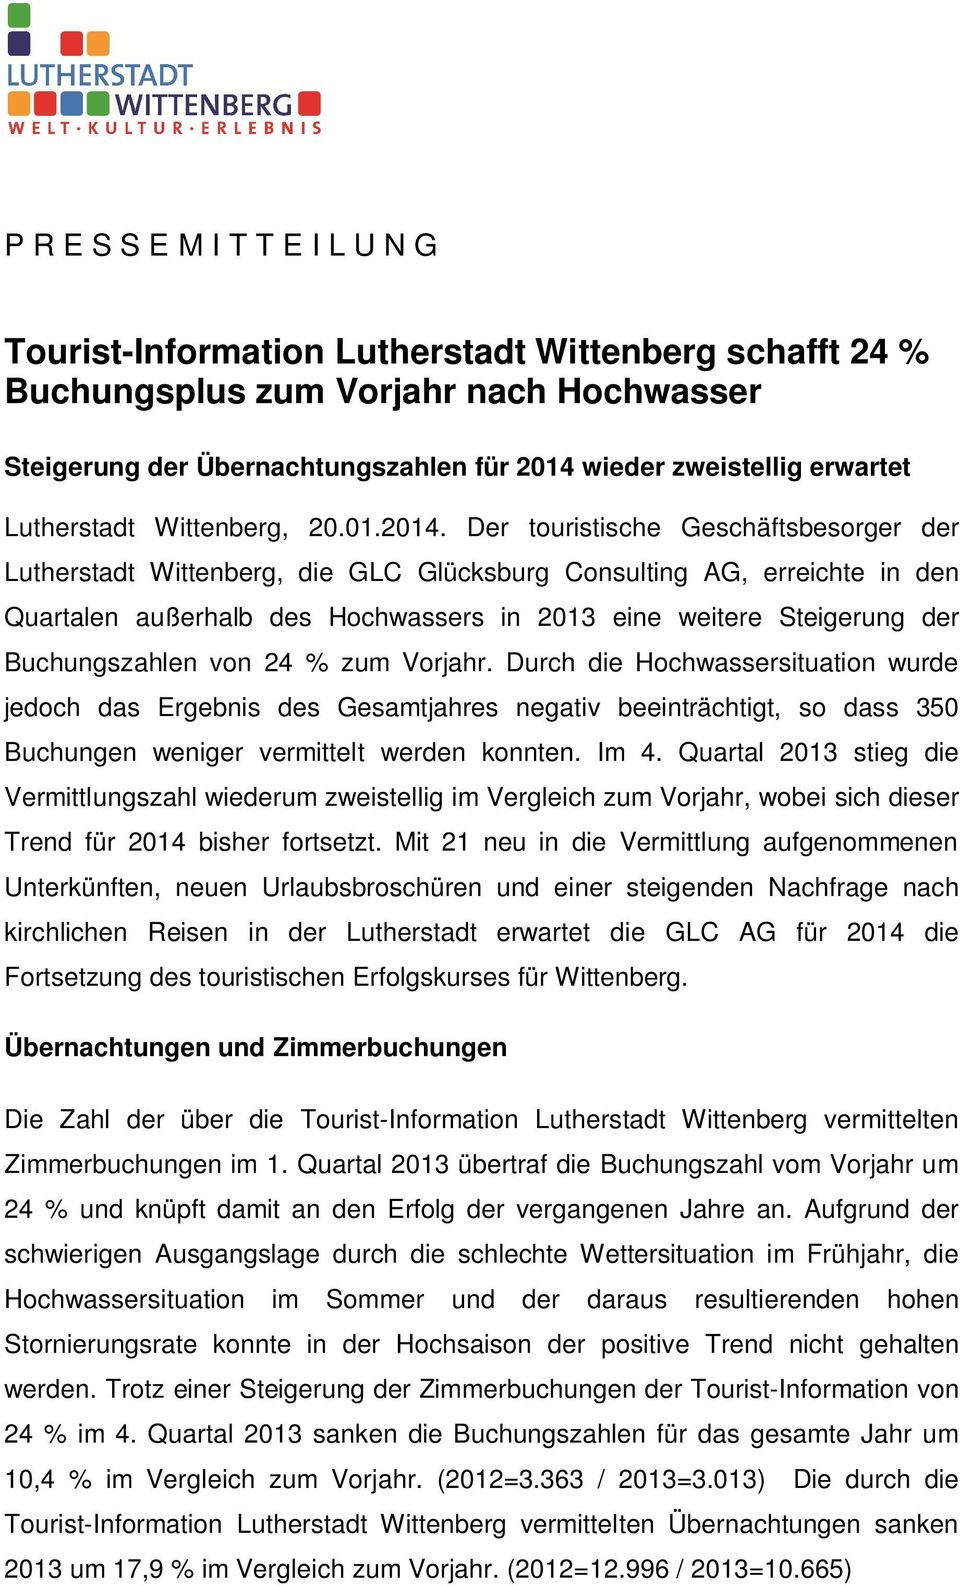 Der touristische Geschäftsbesorger der Lutherstadt Wittenberg, die GLC Glücksburg Consulting AG, erreichte in den Quartalen außerhalb des Hochwassers in 2013 eine weitere Steigerung der